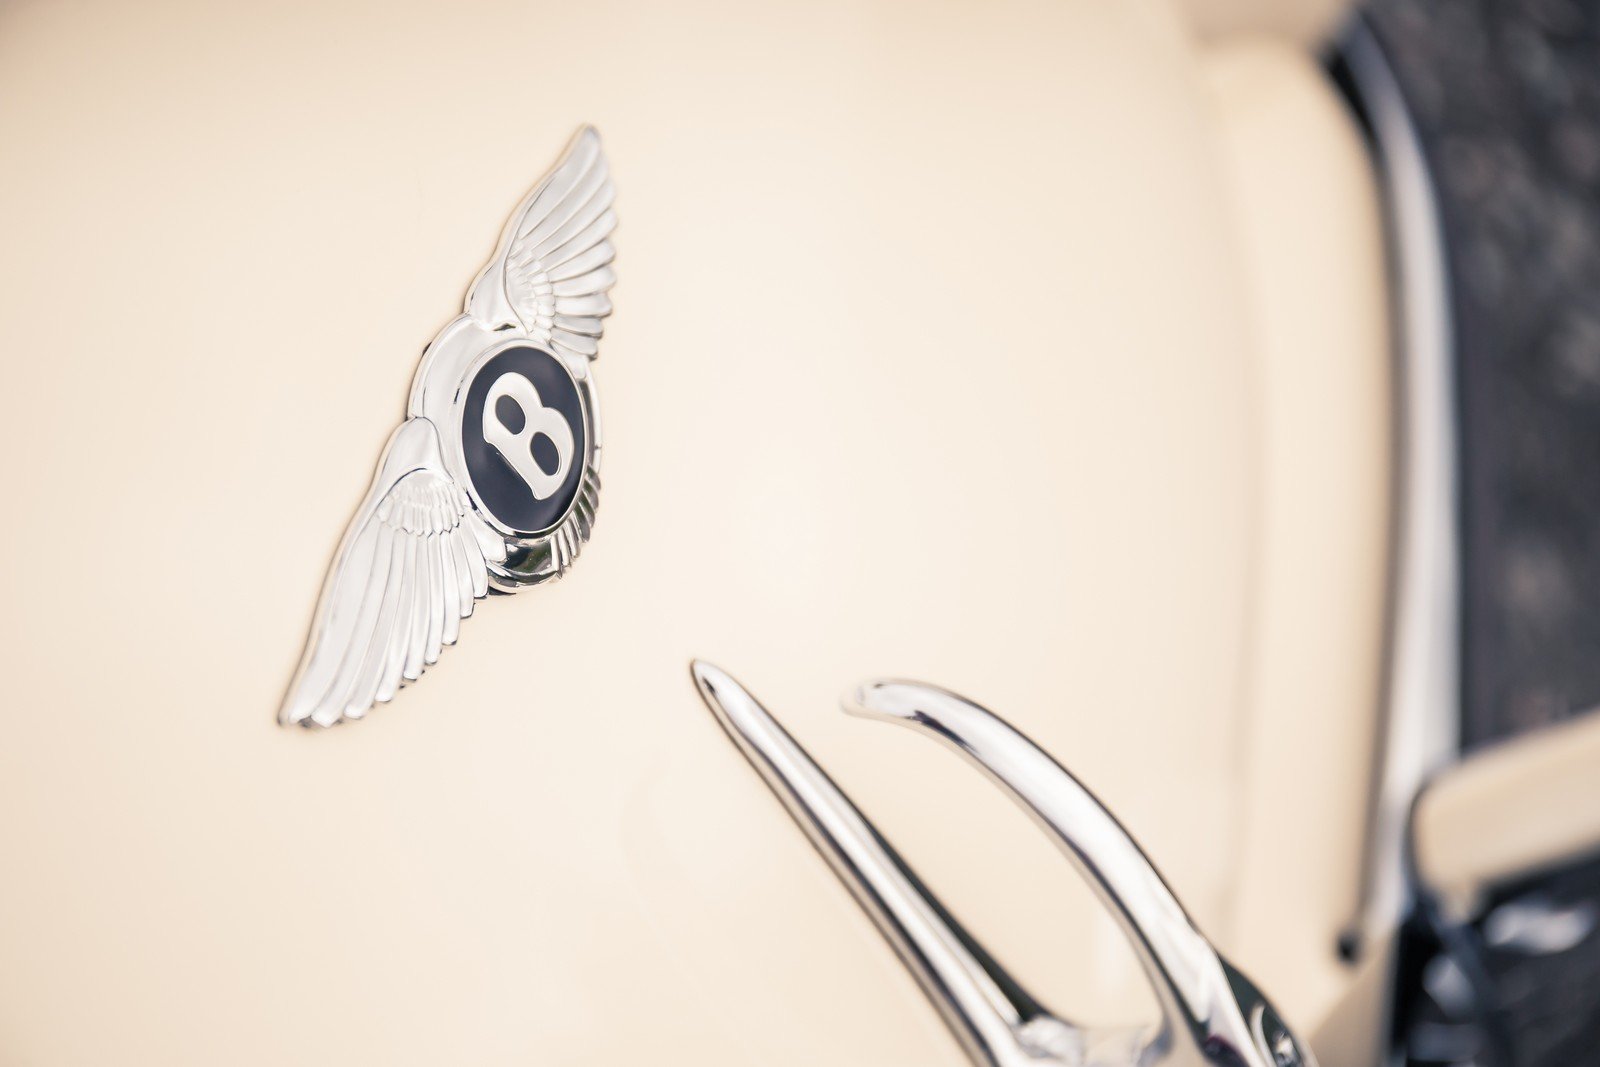 Bentley prezentuje Continental GT Speed po boku průkopníka jména Continental